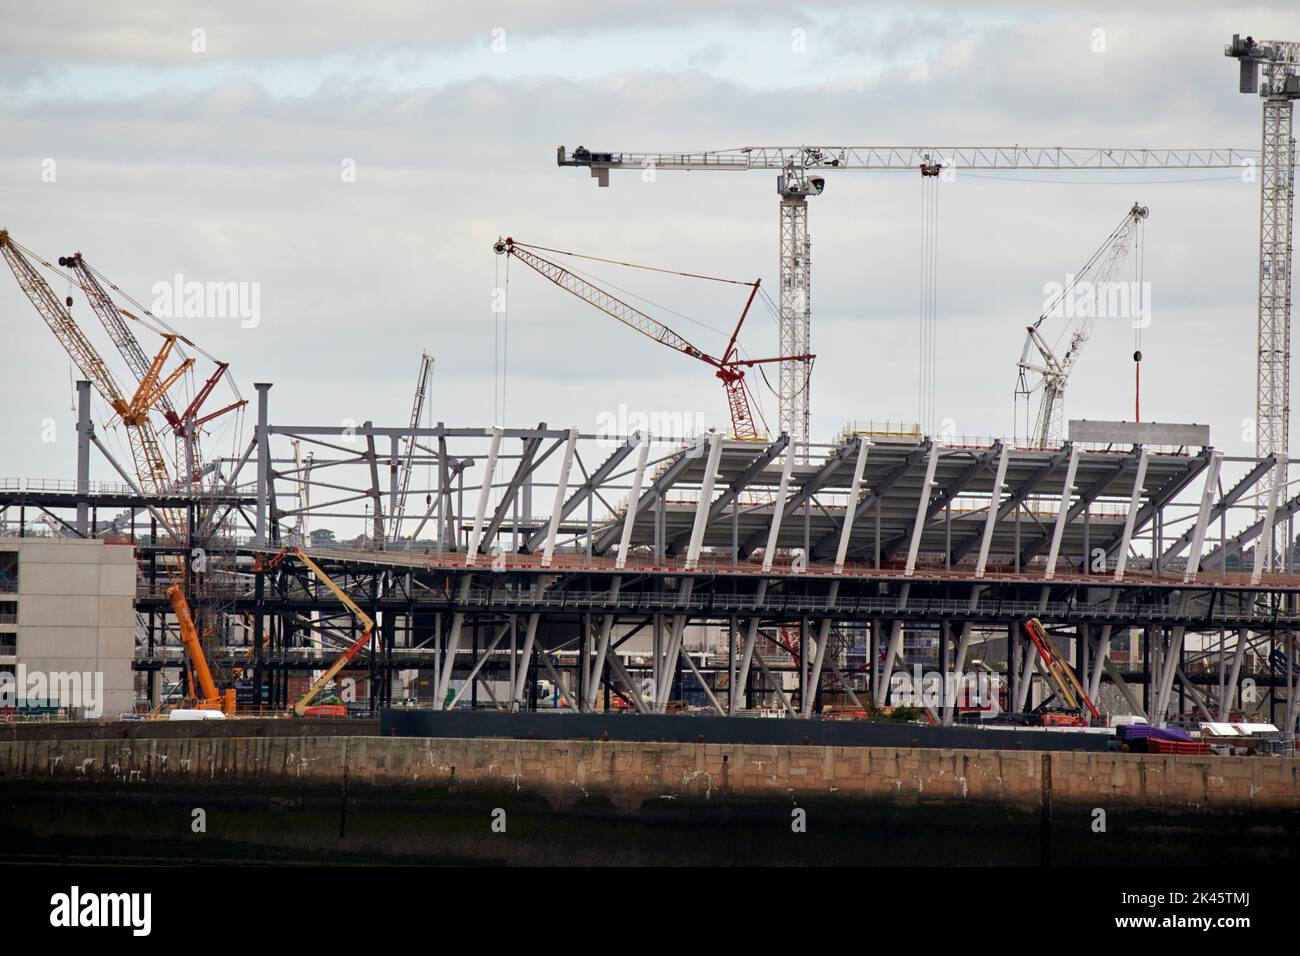 Travaux de construction en cours au nouveau terrain d'Everton FPC à bramley-moore Dock liverpool, royaume-uni Banque D'Images